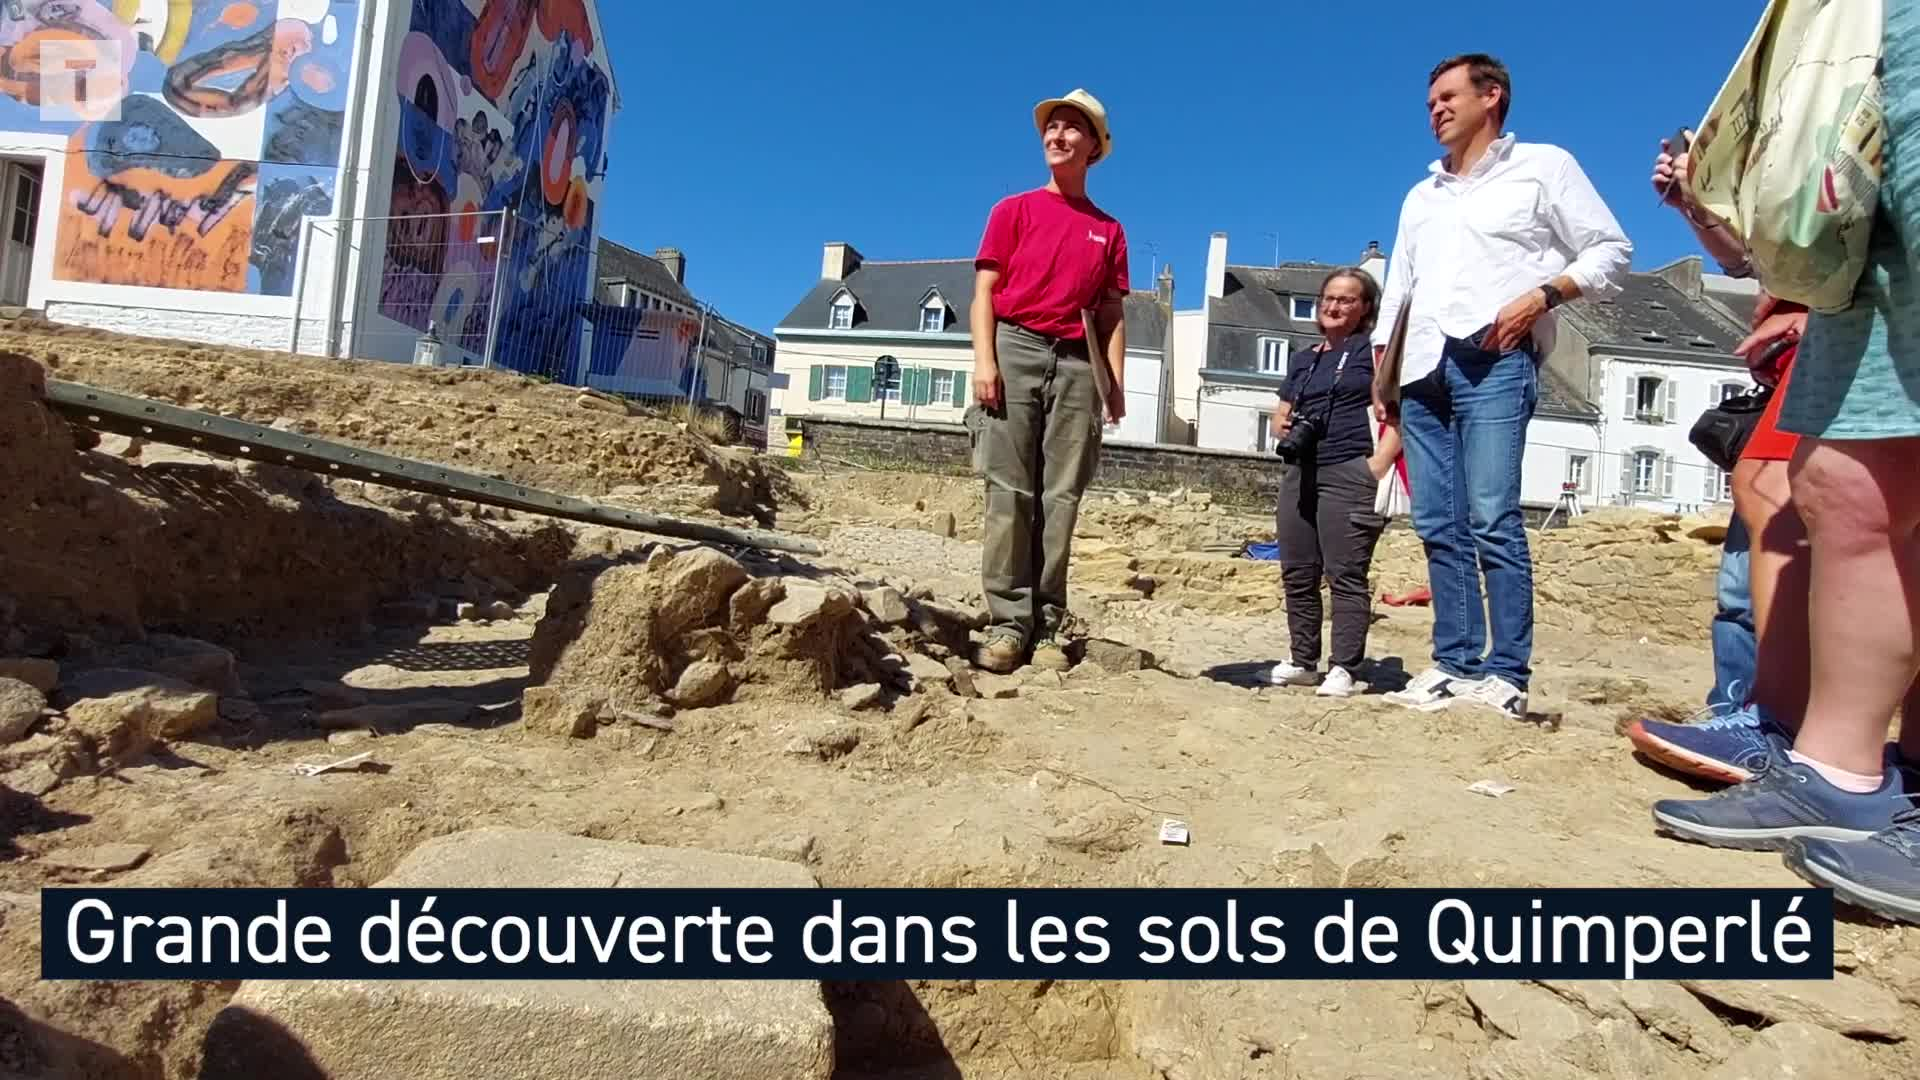 Découverte importante sur le chantier archéologique à Quimperlé (Le Télégramme)